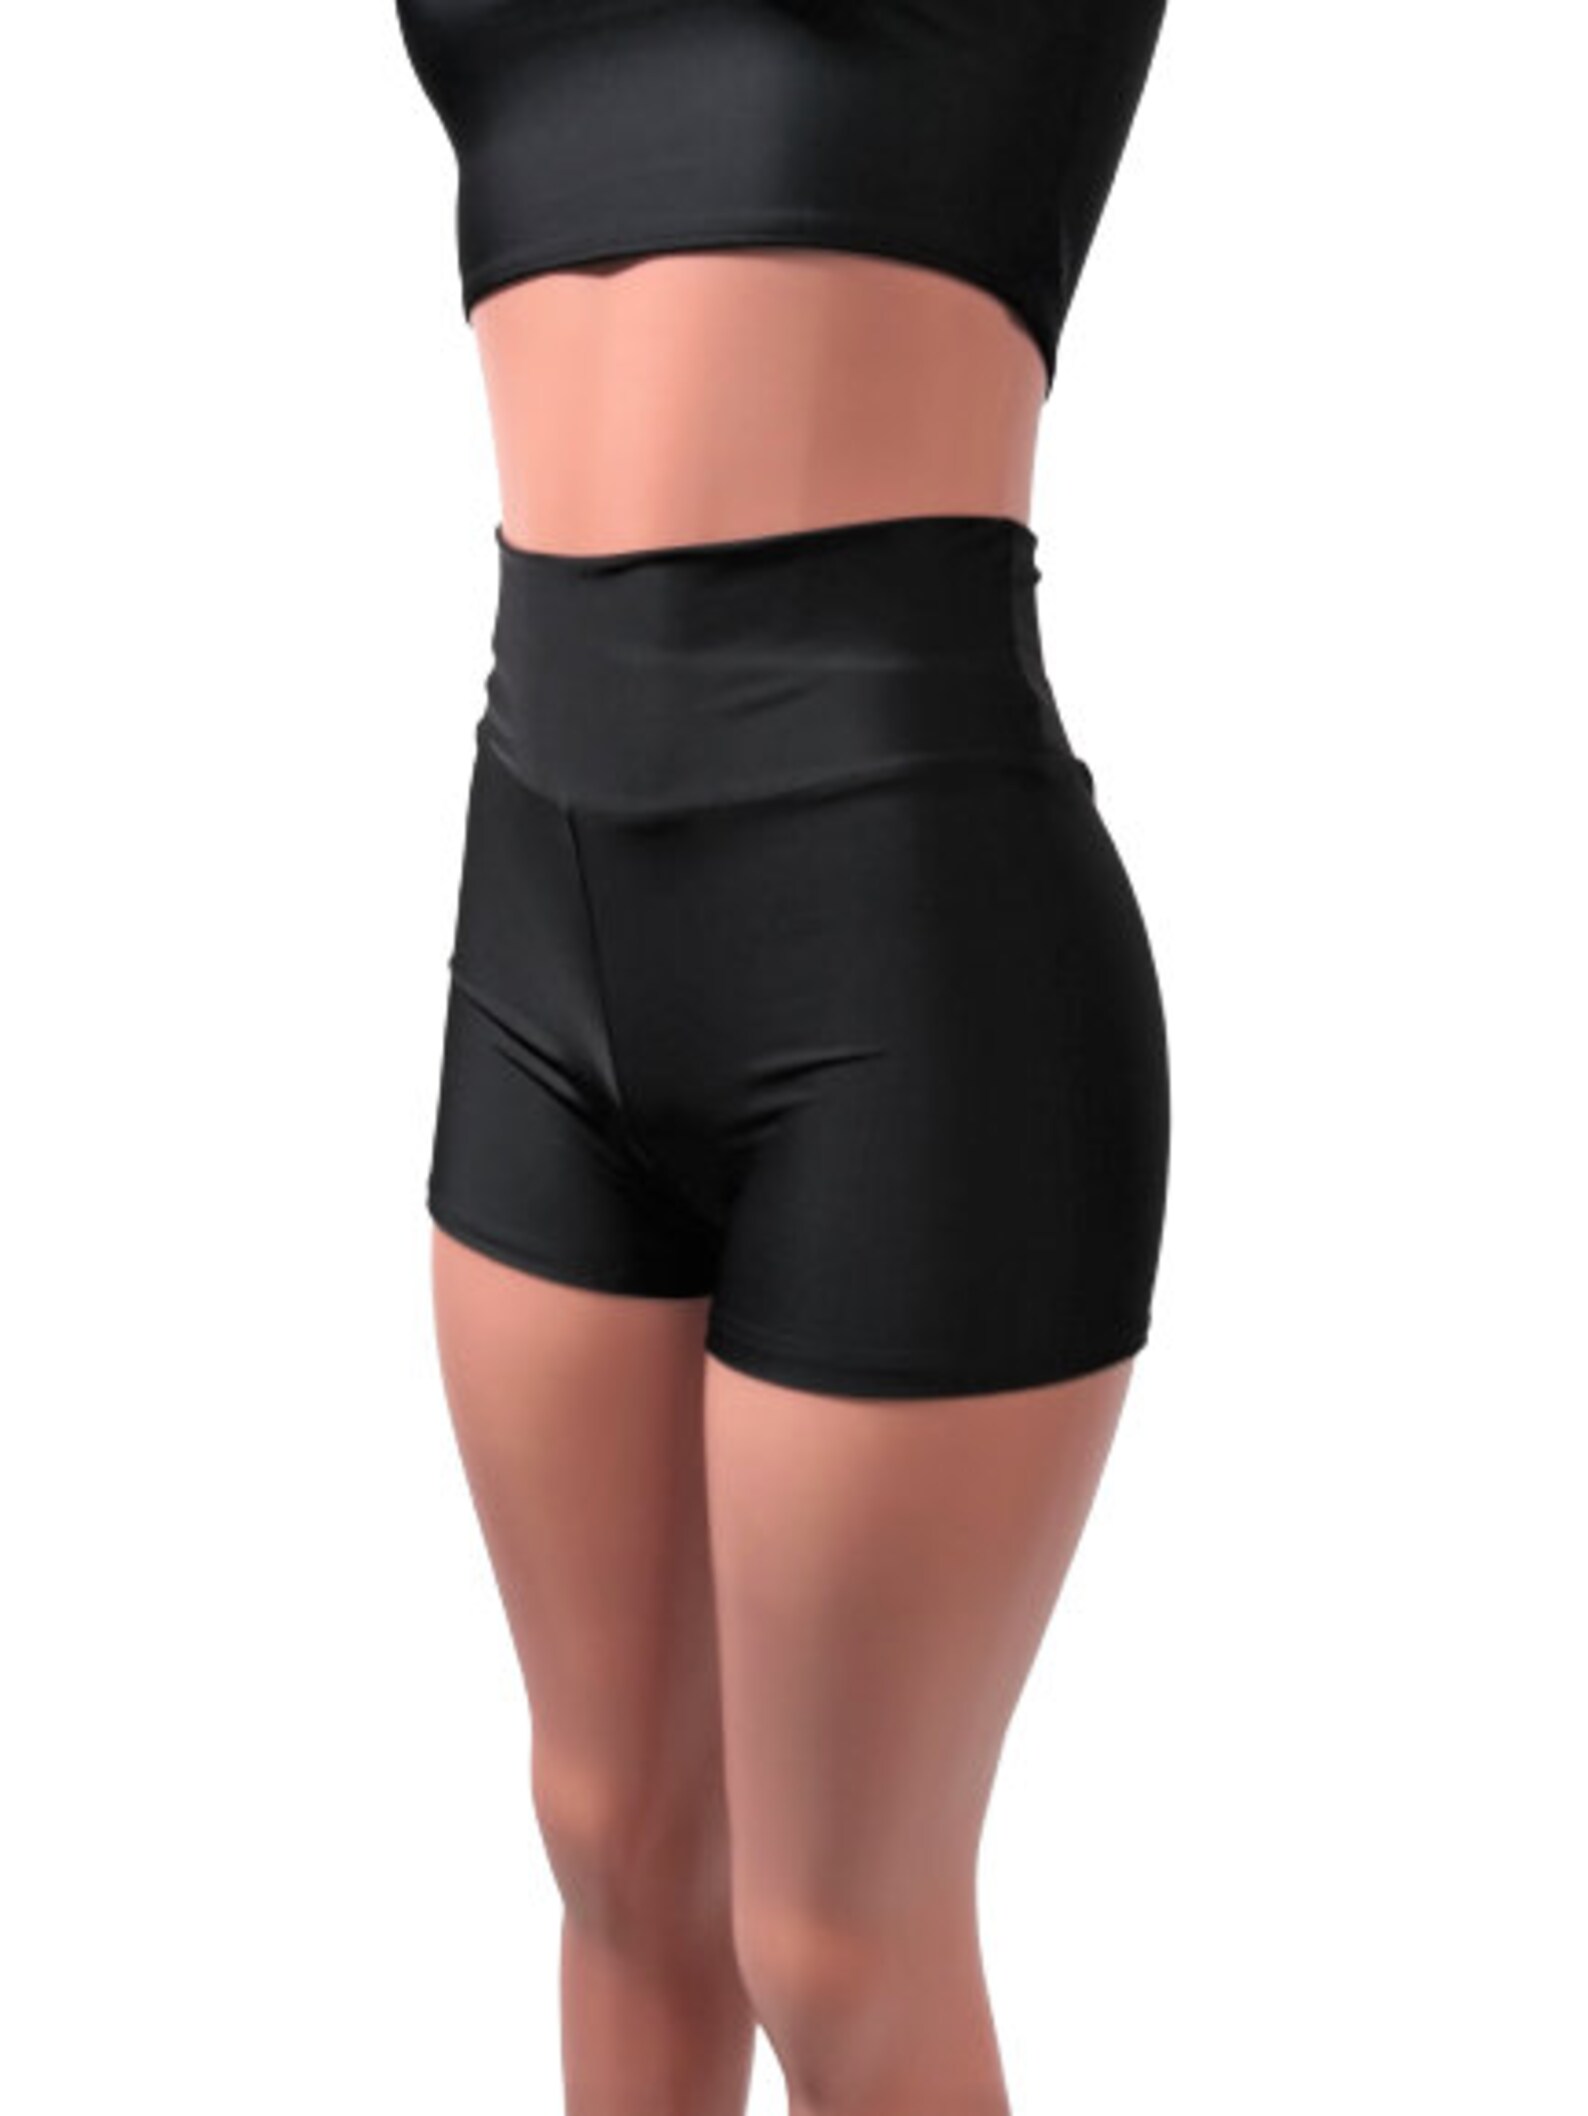 Black Spandex High waist Booty shorts Boy shorts Running Gym | Etsy